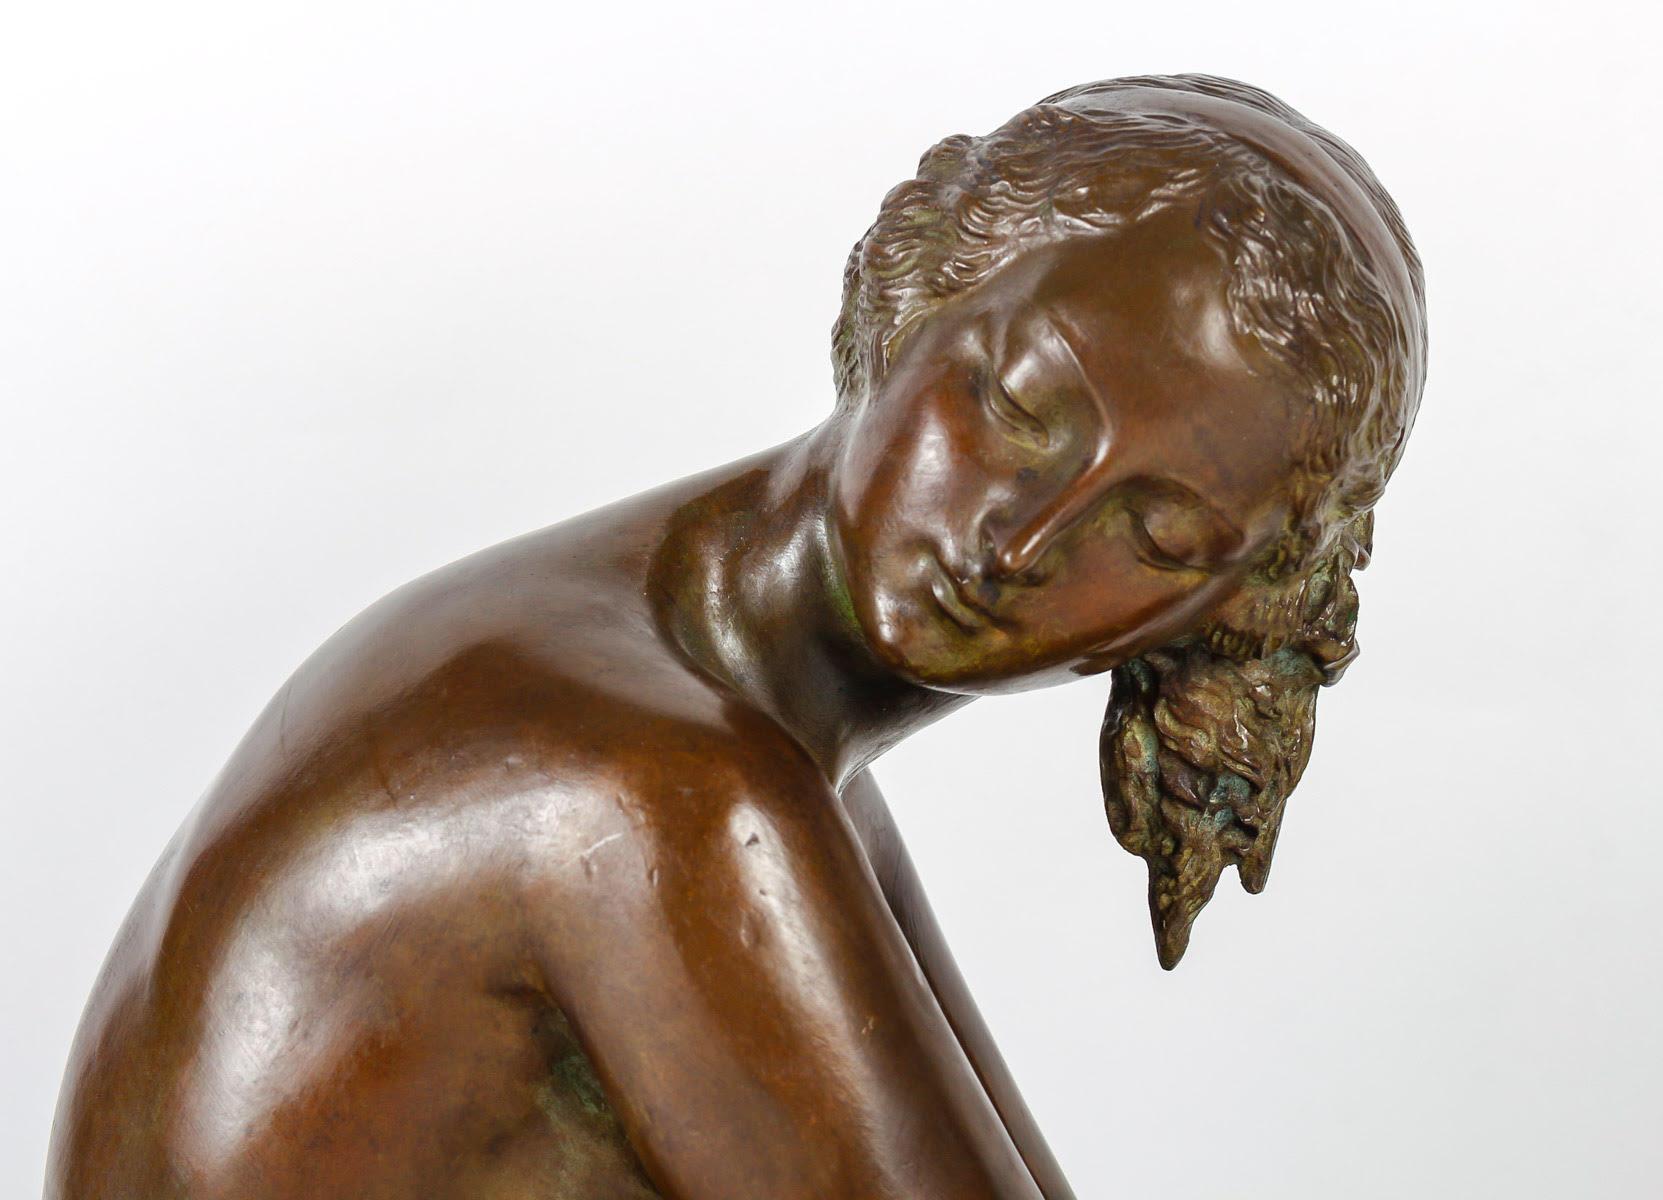 Bronze sculpture by J. Cormier, Art Deco period, circa 1930.

Bronze, Art Deco period sculpture, 1930 by J. Cormier .

Dimensions: h: 35cm, w: 73cm, d: 18cm